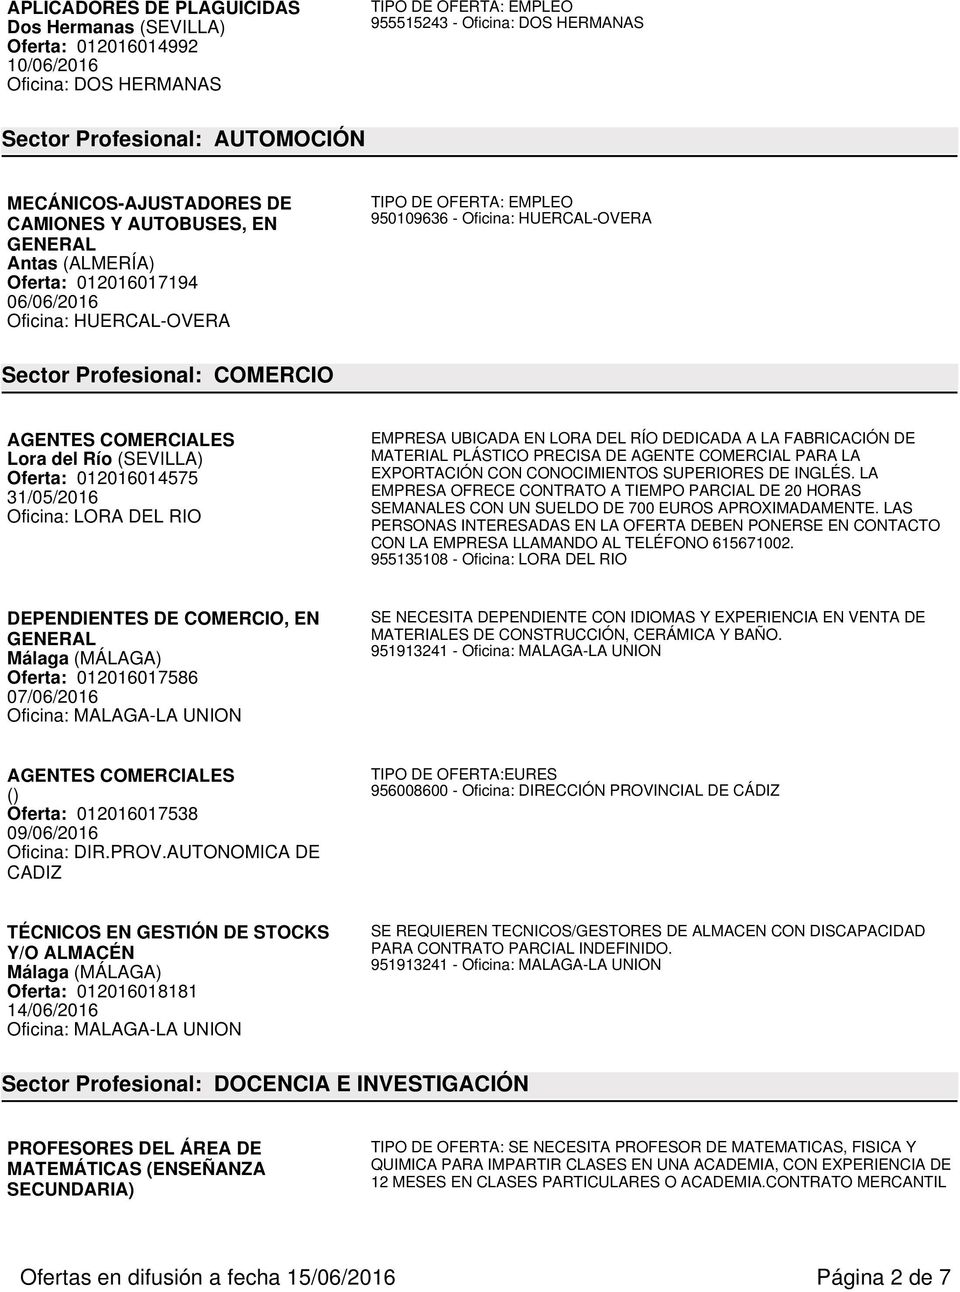 012016014575 31/05/2016 Oficina: LORA DEL RIO EMPRESA UBICADA EN LORA DEL RÍO DEDICADA A LA FABRICACIÓN DE MATERIAL PLÁSTICO PRECISA DE AGENTE COMERCIAL PARA LA EXPORTACIÓN CON CONOCIMIENTOS